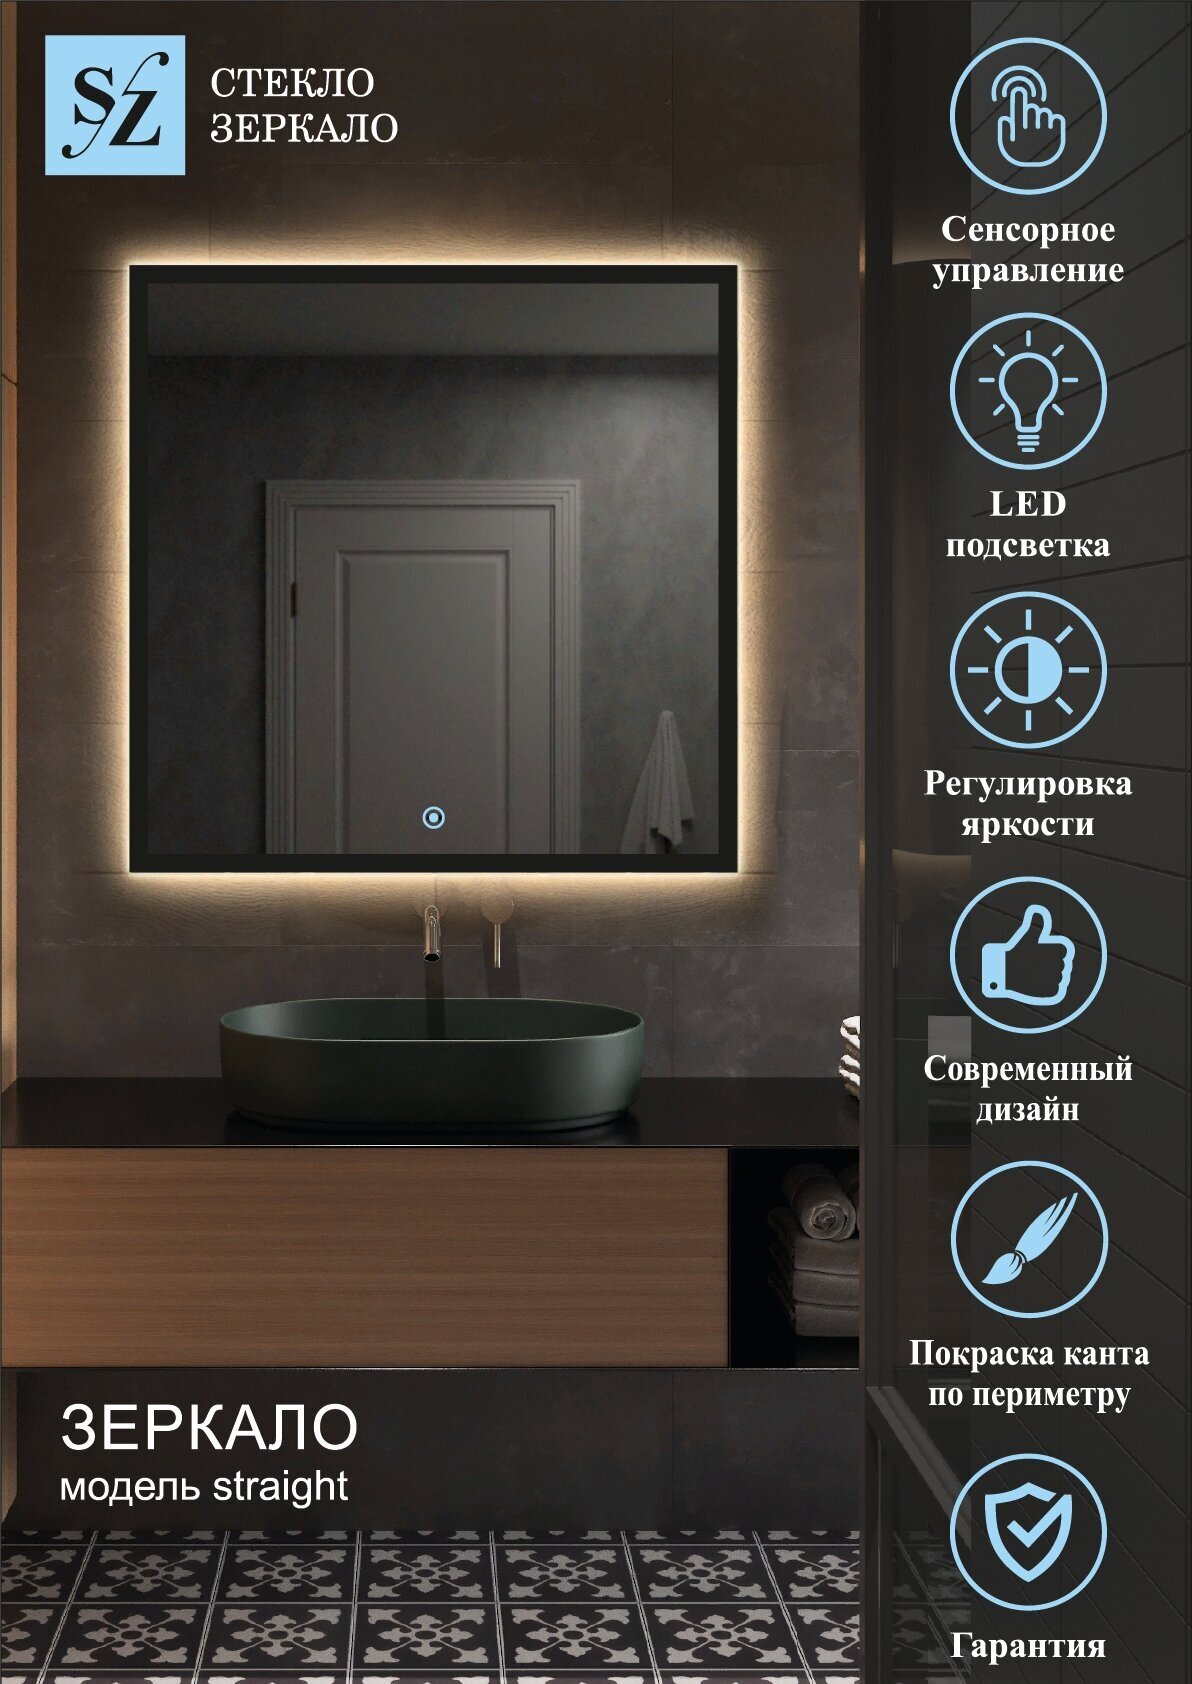 Зеркало интерьерное с подсветкой парящее прямоугольное 60*80см для ванной сенсорное управление + покраска по периметру